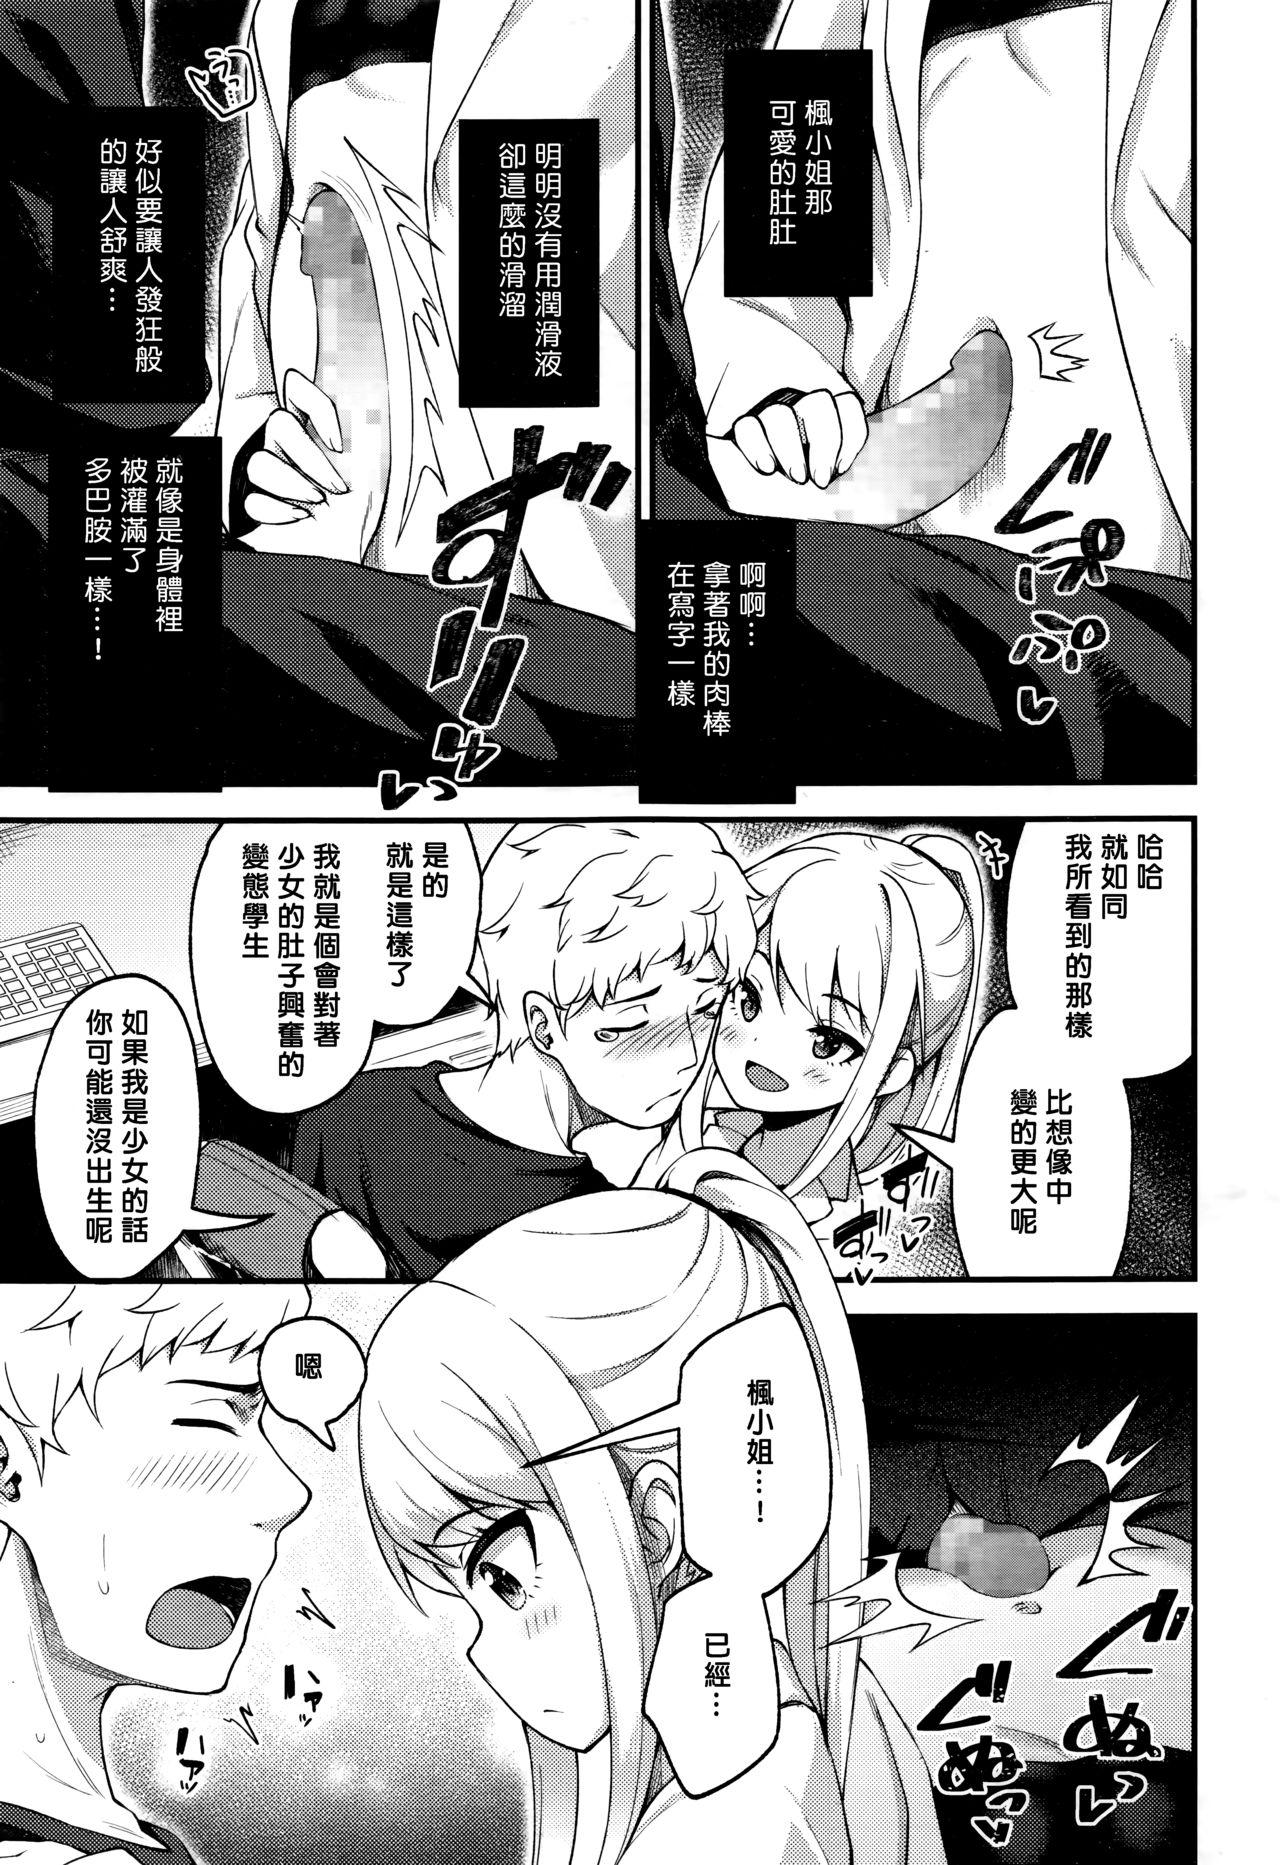 4some Asakura hakase no bibouroku POV - Page 9